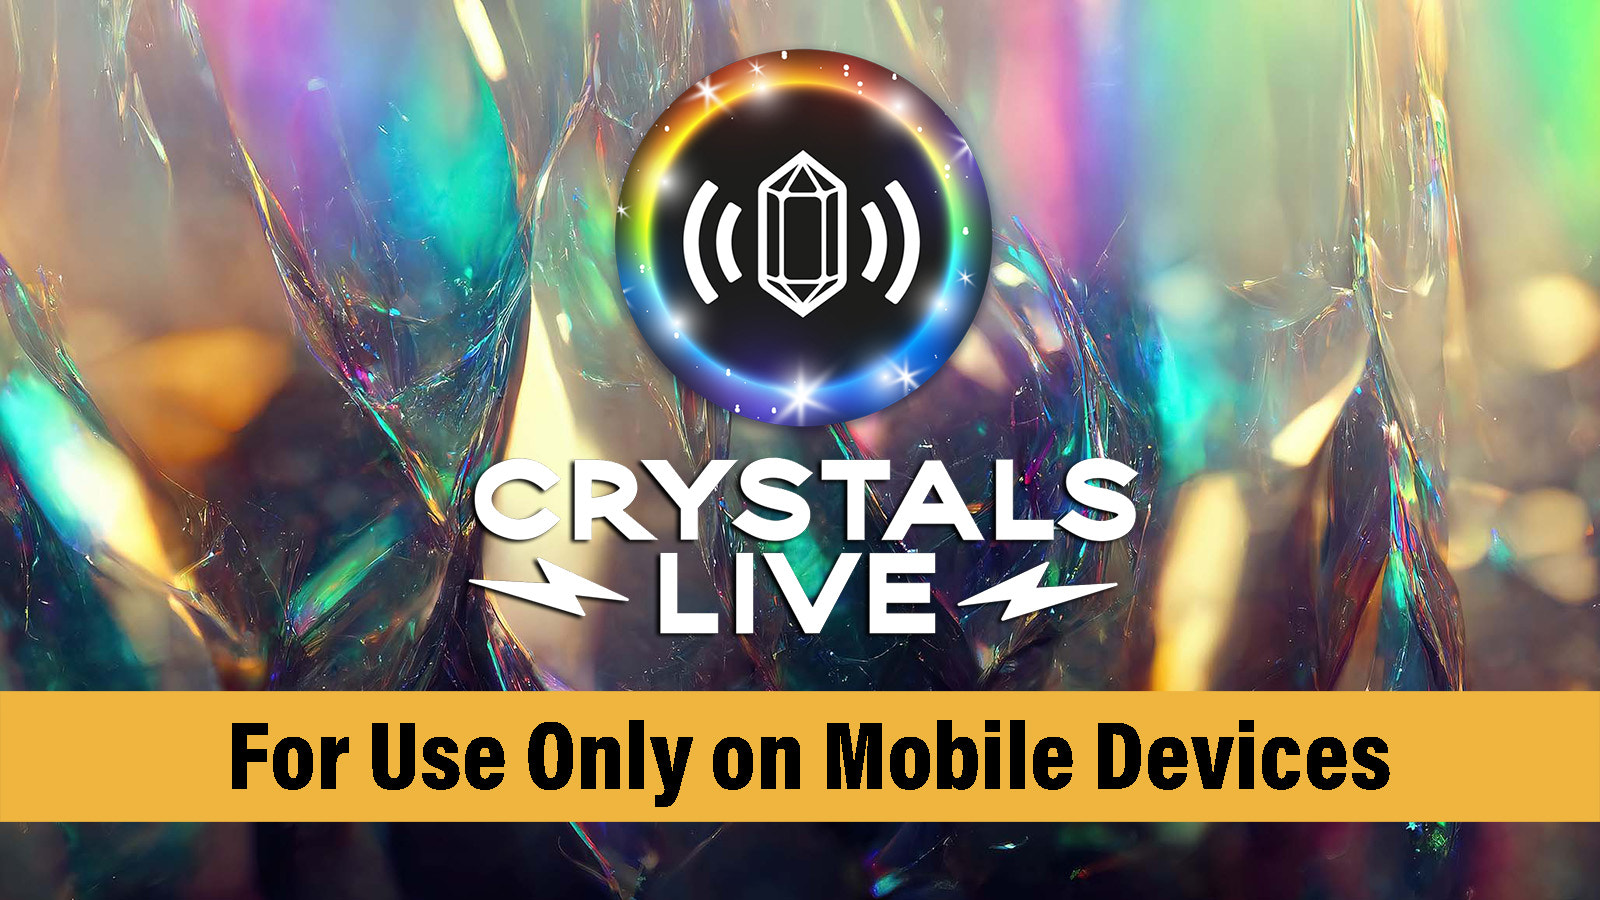 Crystals Live est une application mobile uniquement